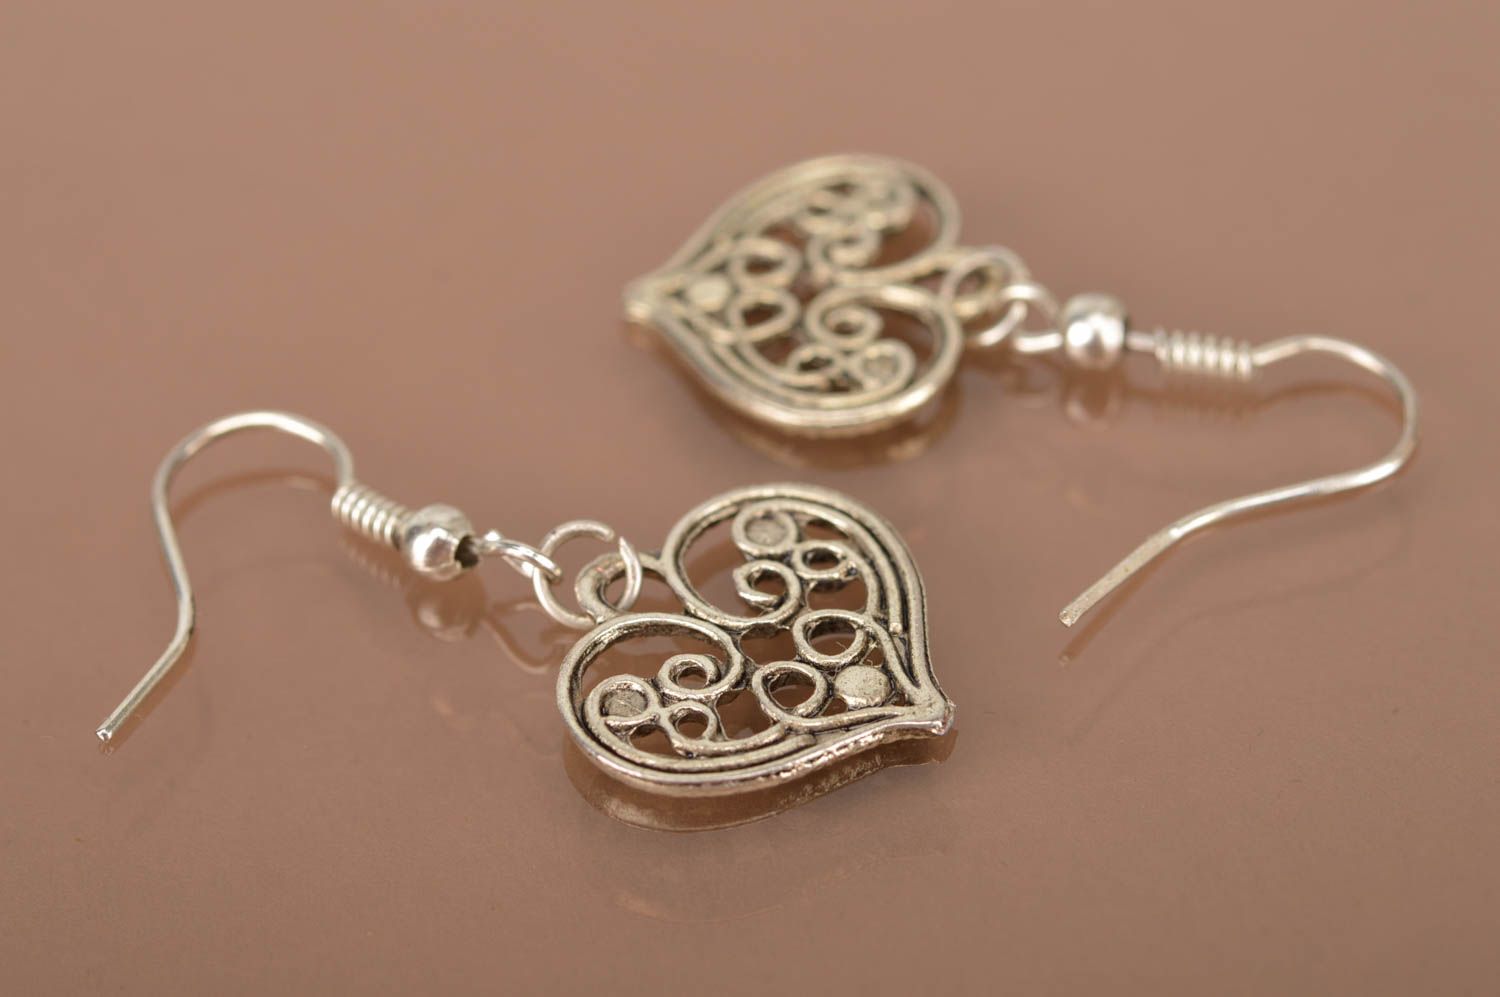 Unusual handmade metal earrings fashion earrings designs jewelry for women photo 3